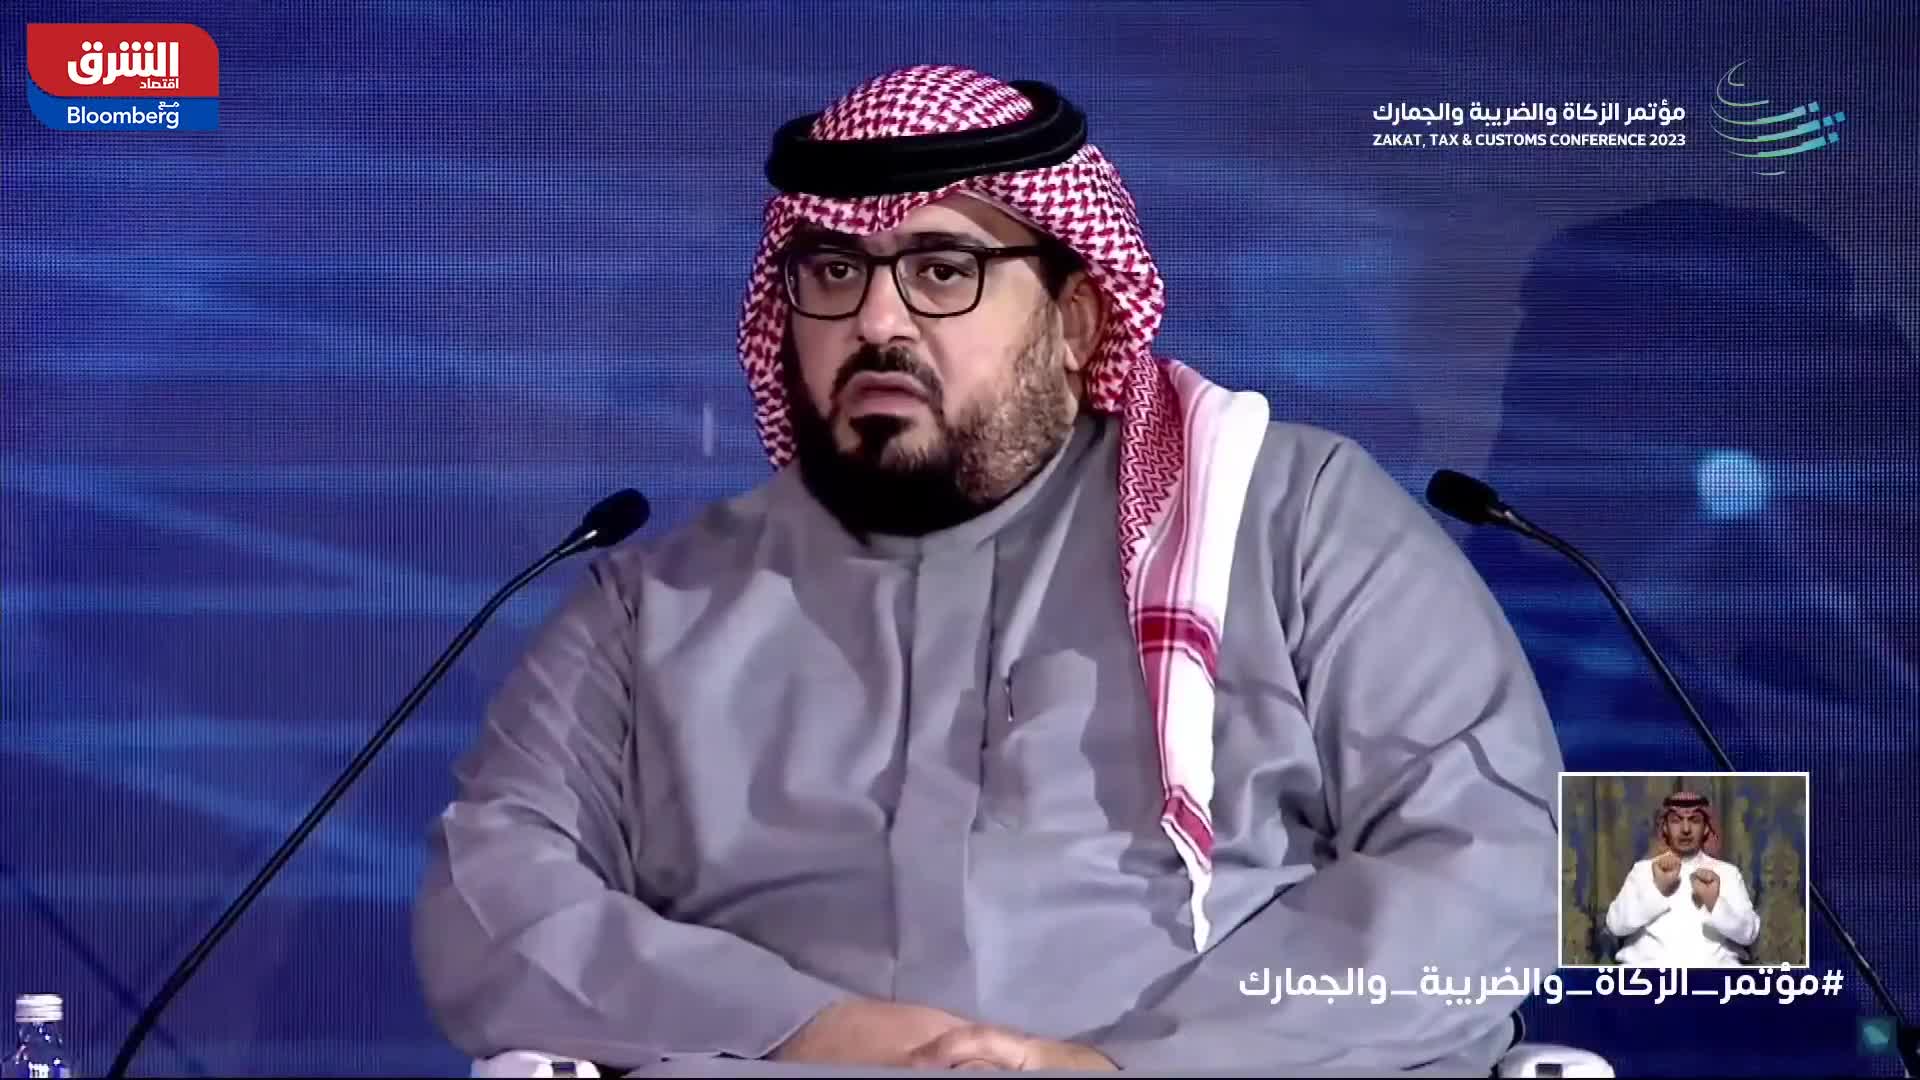 وزير الاقتصاد السعودي: حجم اقتصاد الظل في المملكة قريب من الدول المتقدمة